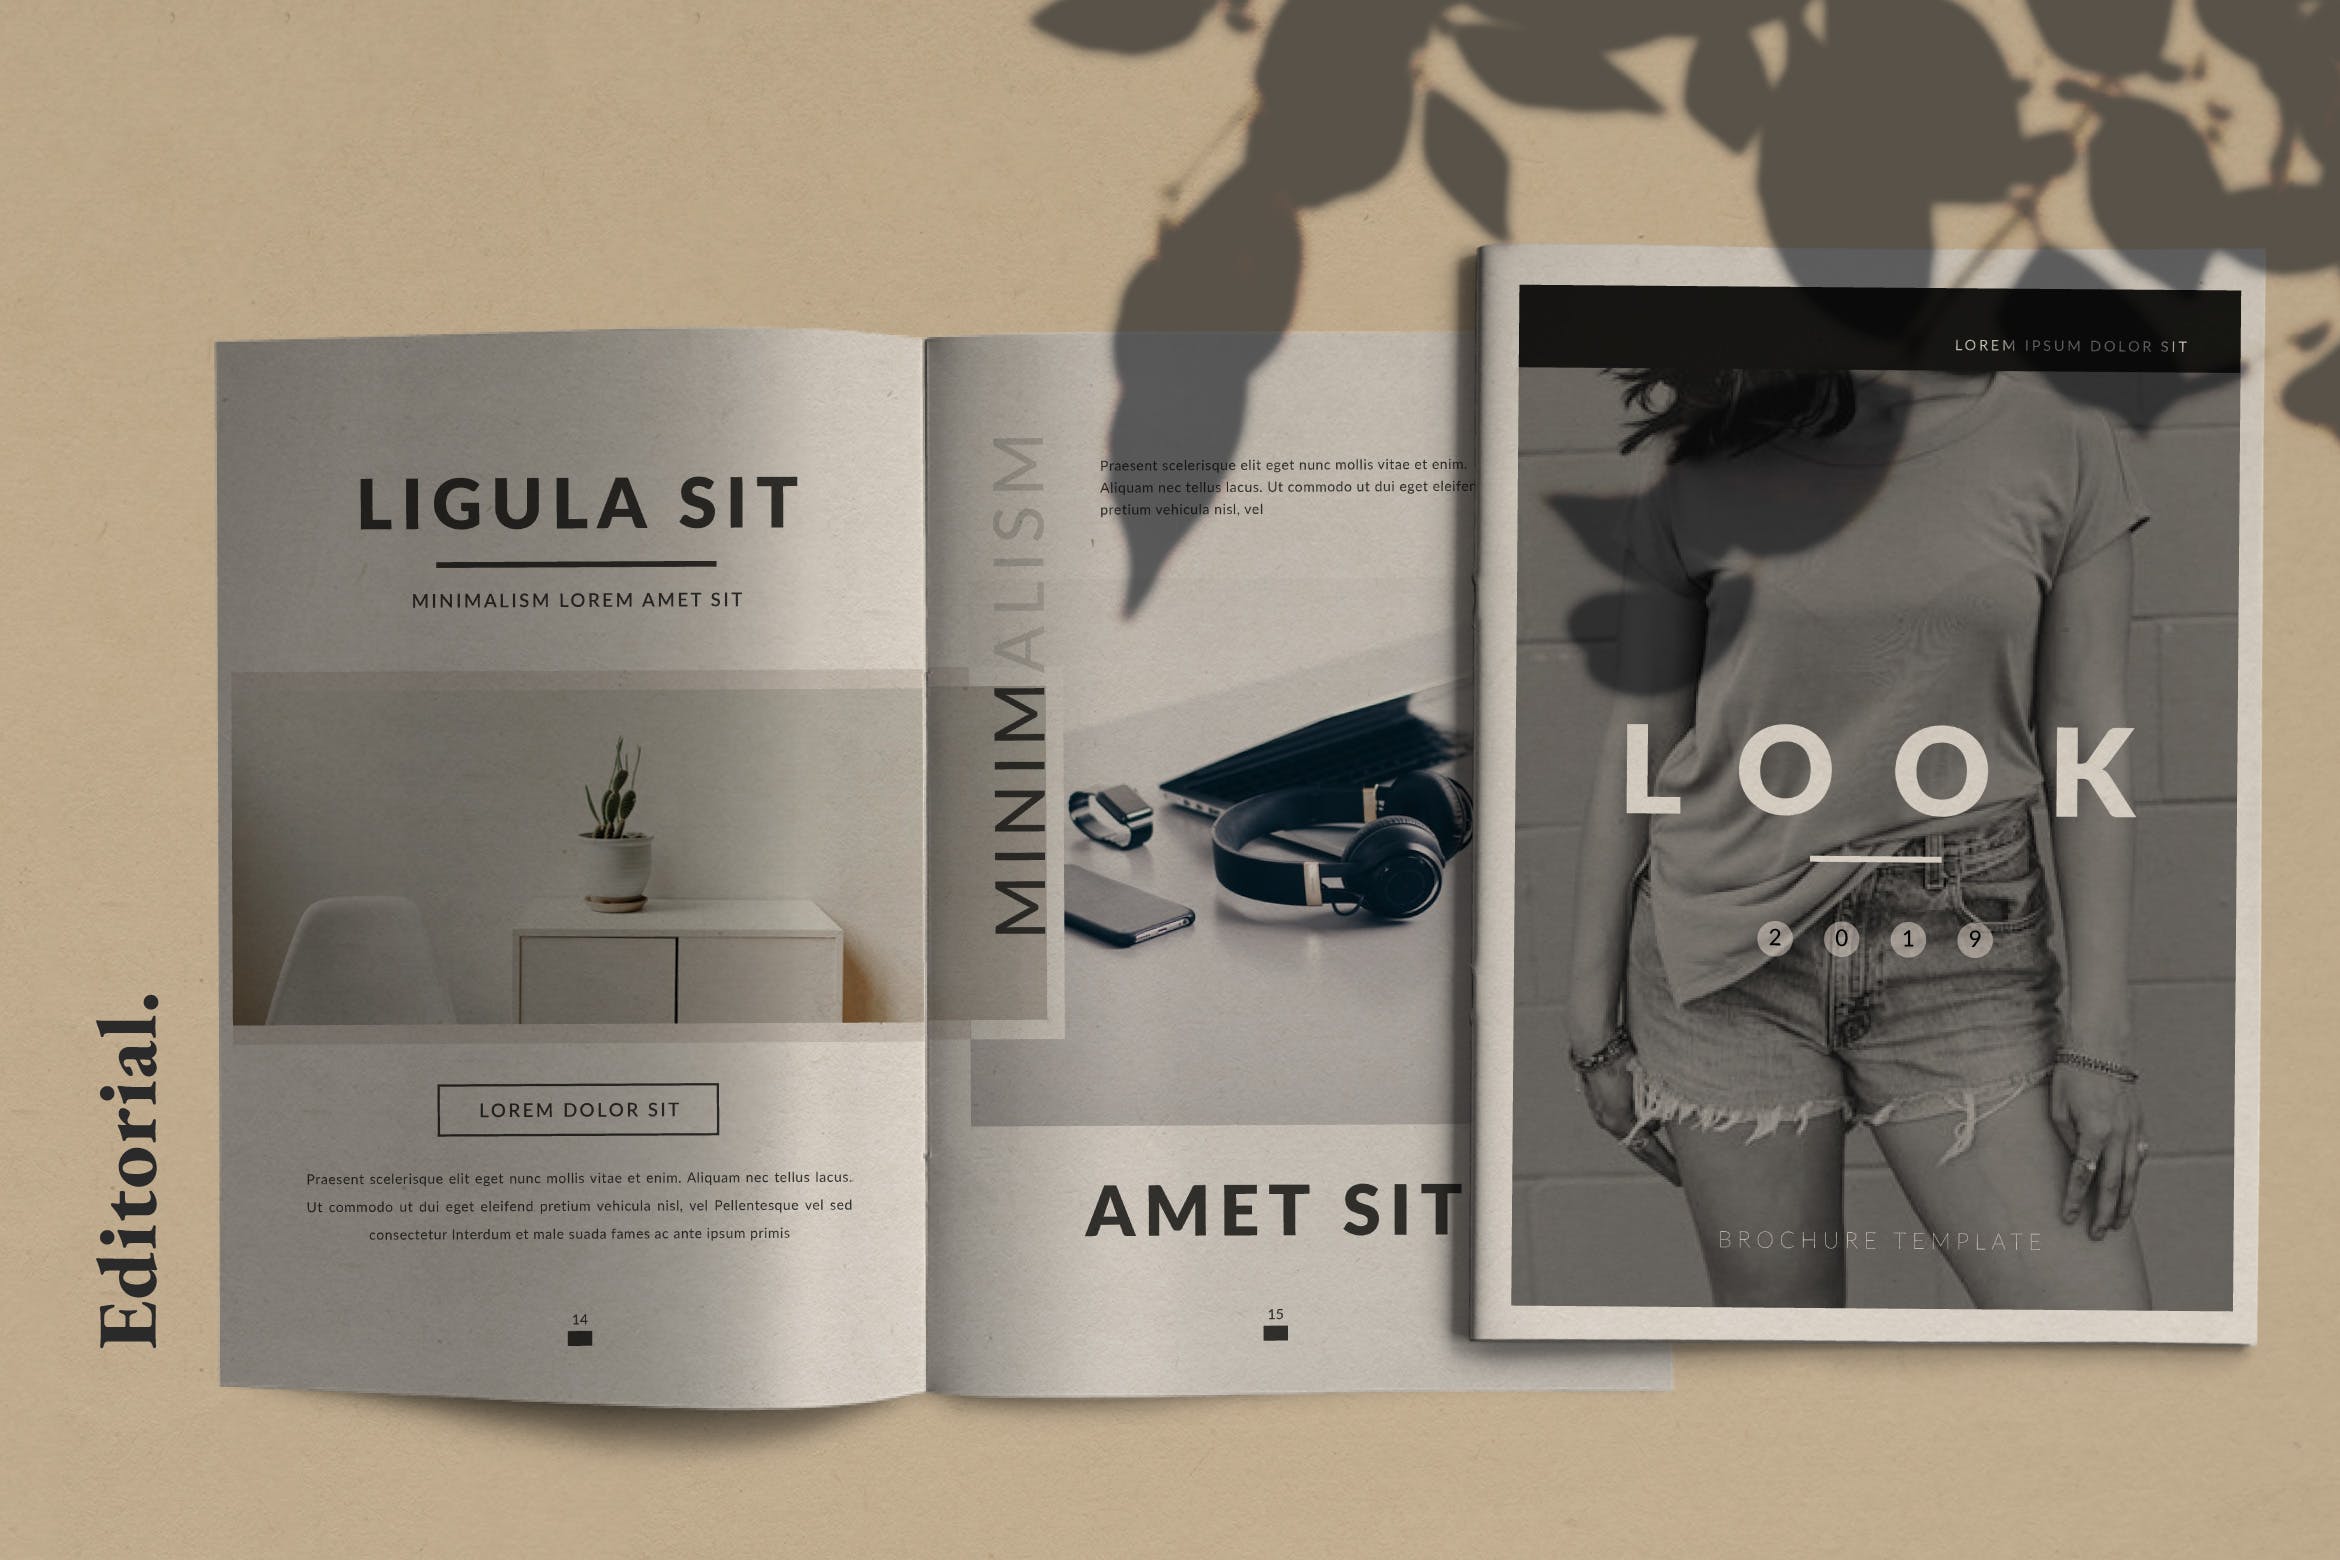 极简主义设计风格企业业务手册16图库精选Lookbook设计模板 Lookbook插图